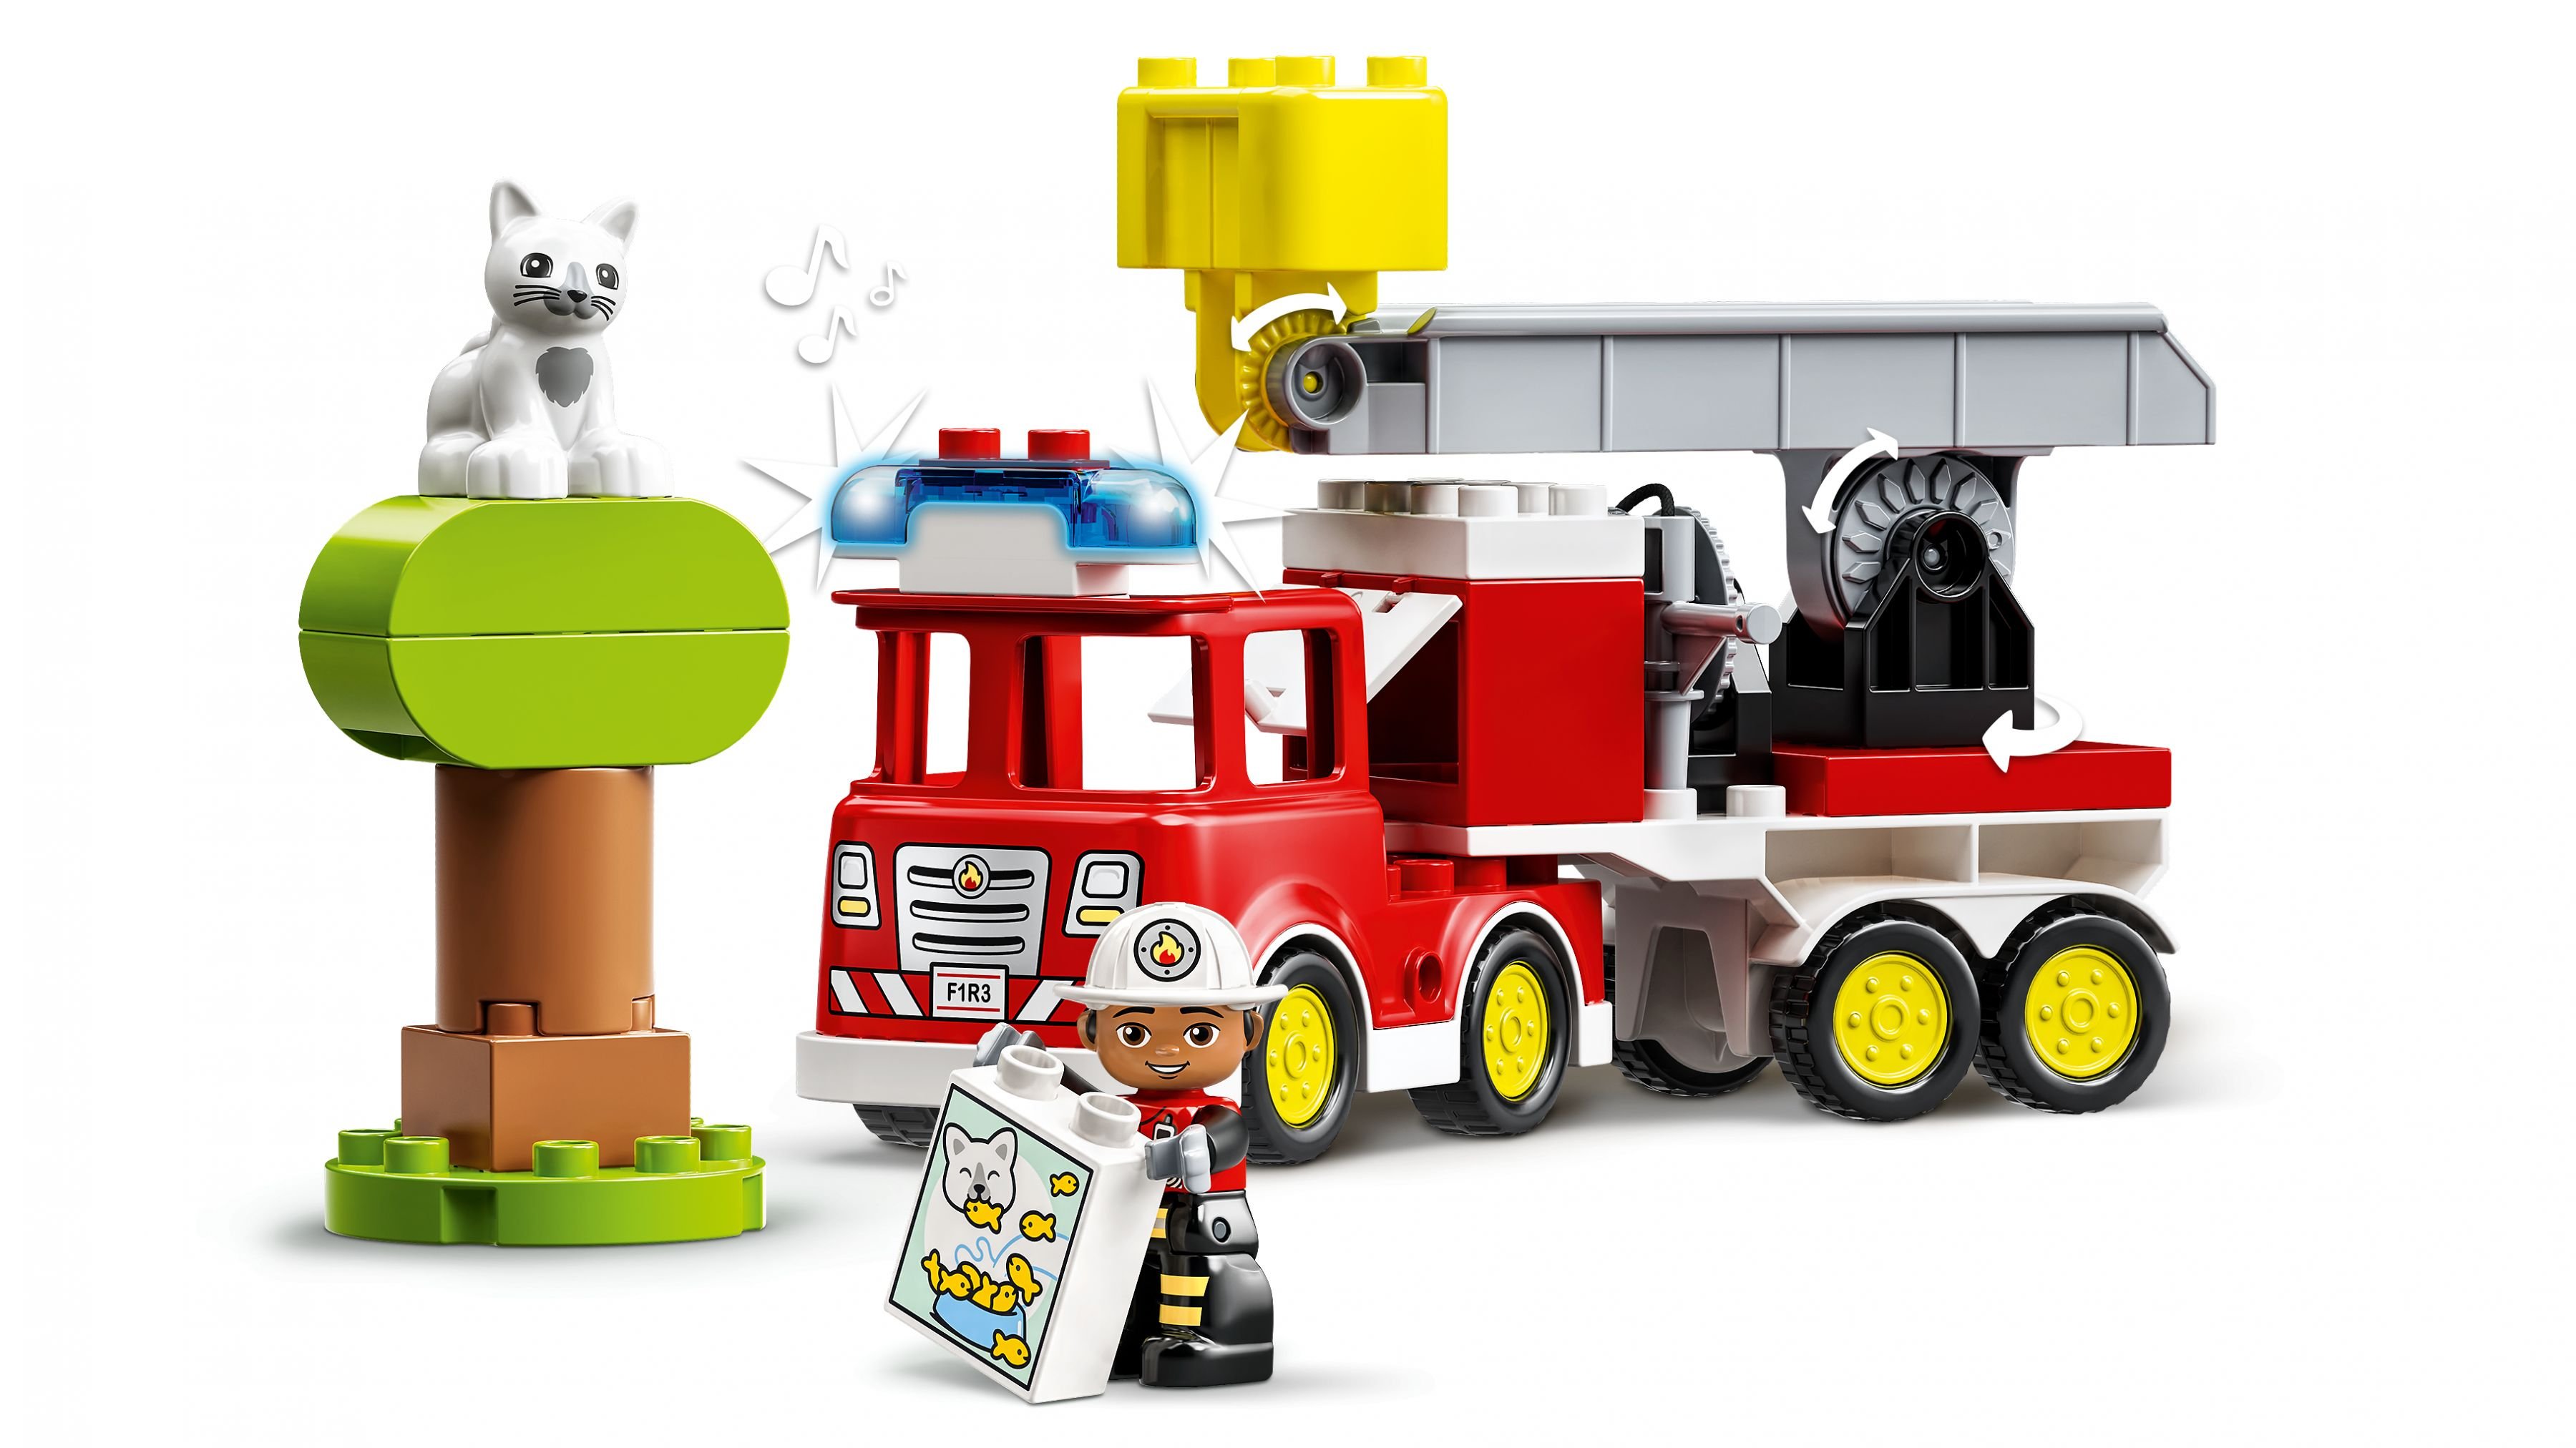 LEGO Duplo 10969 Feuerwehrauto LEGO_10969_WEB_SEC02_NOBG.jpg